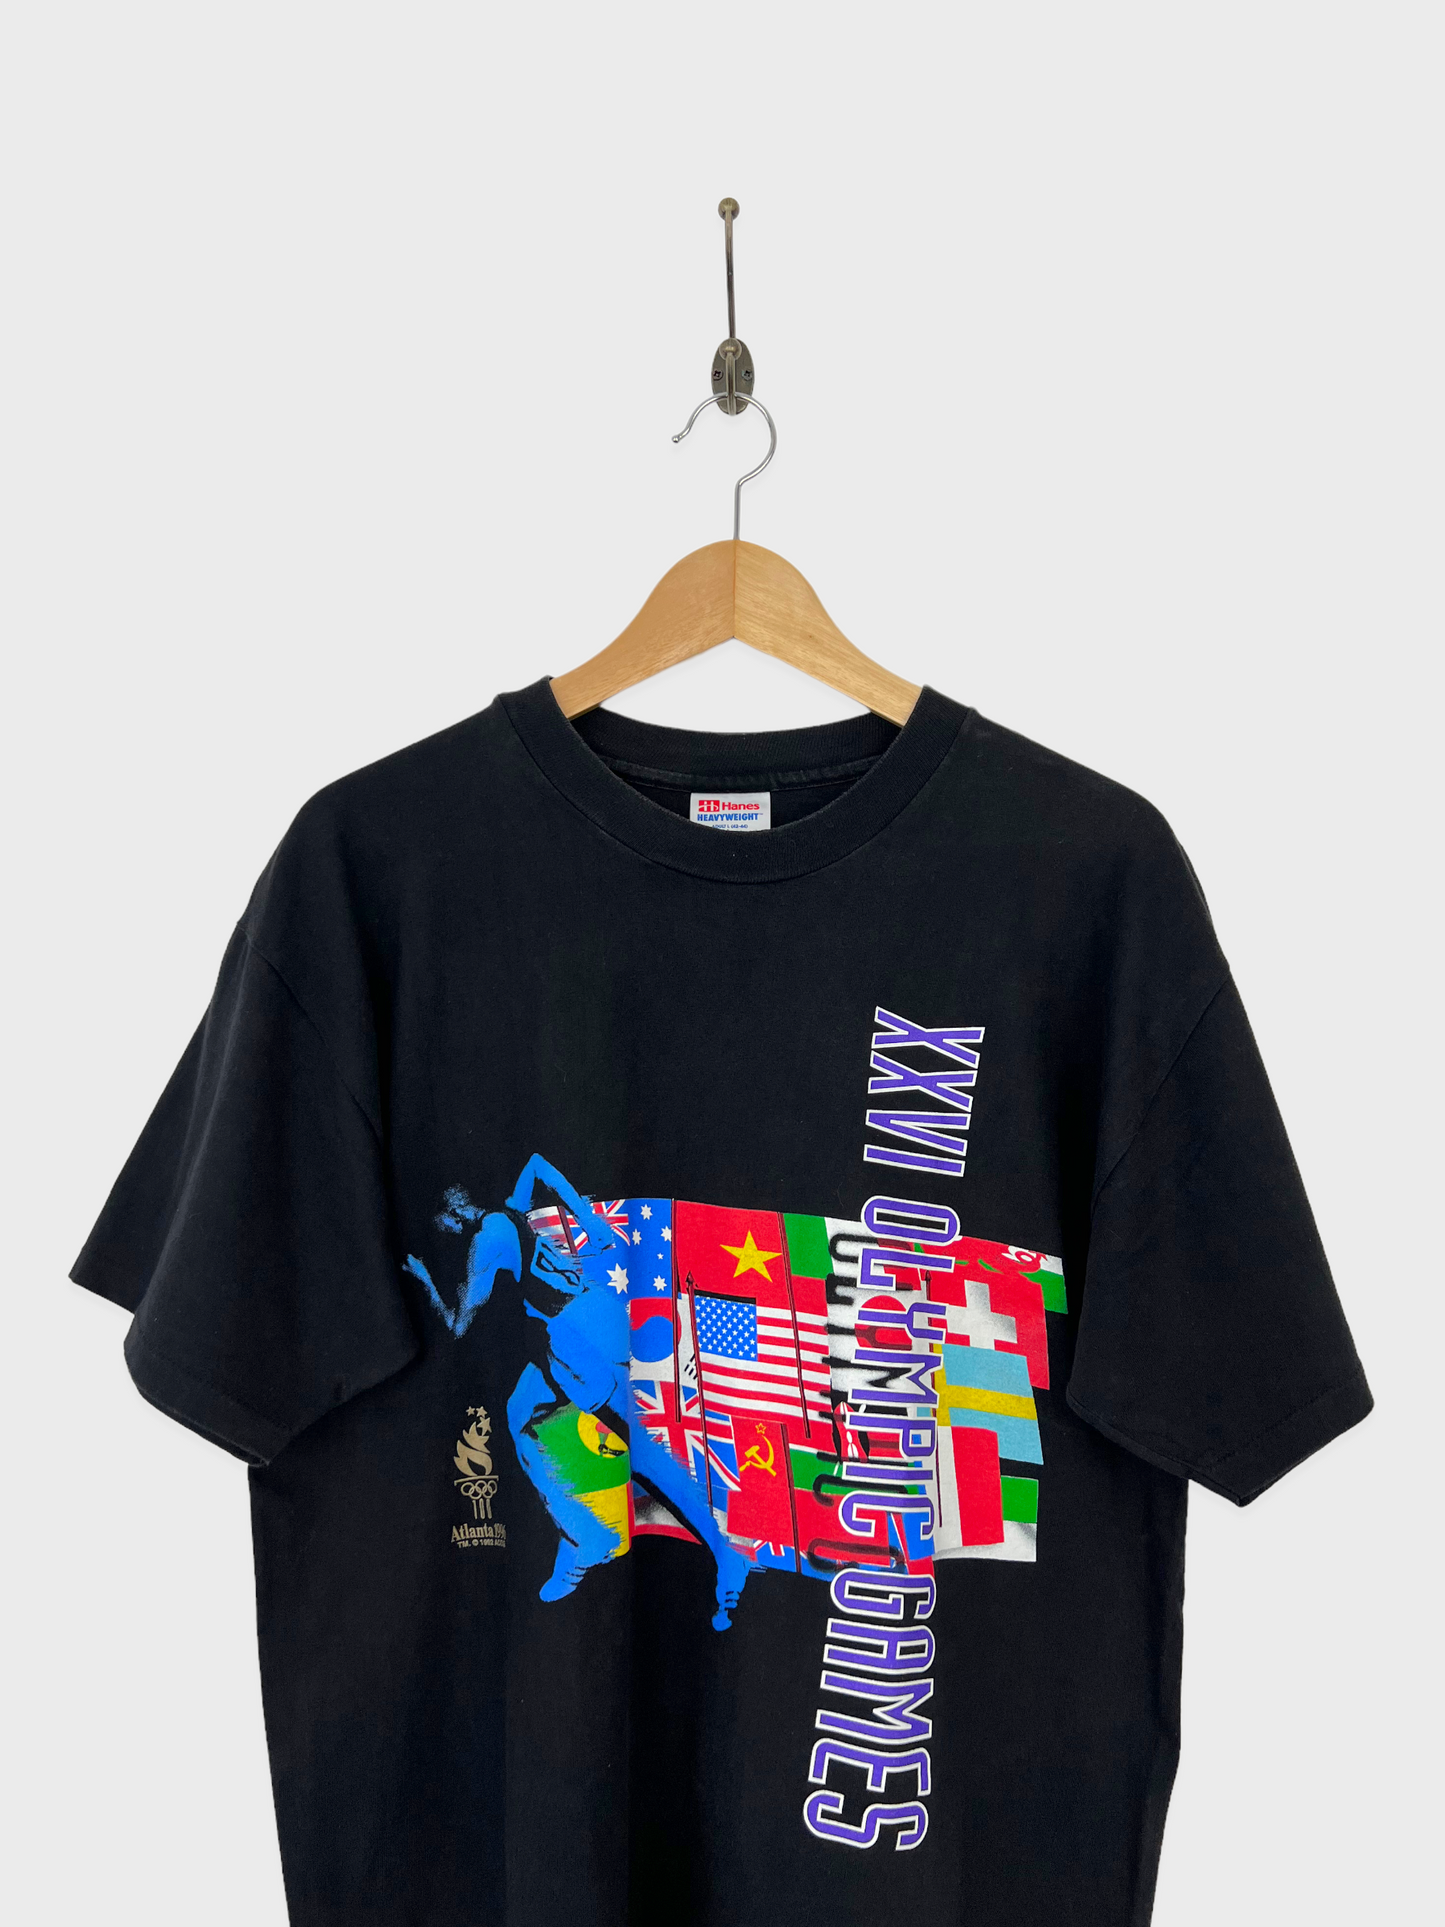 1996 Atlanta Olympics Vintage T-Shirt Size 10